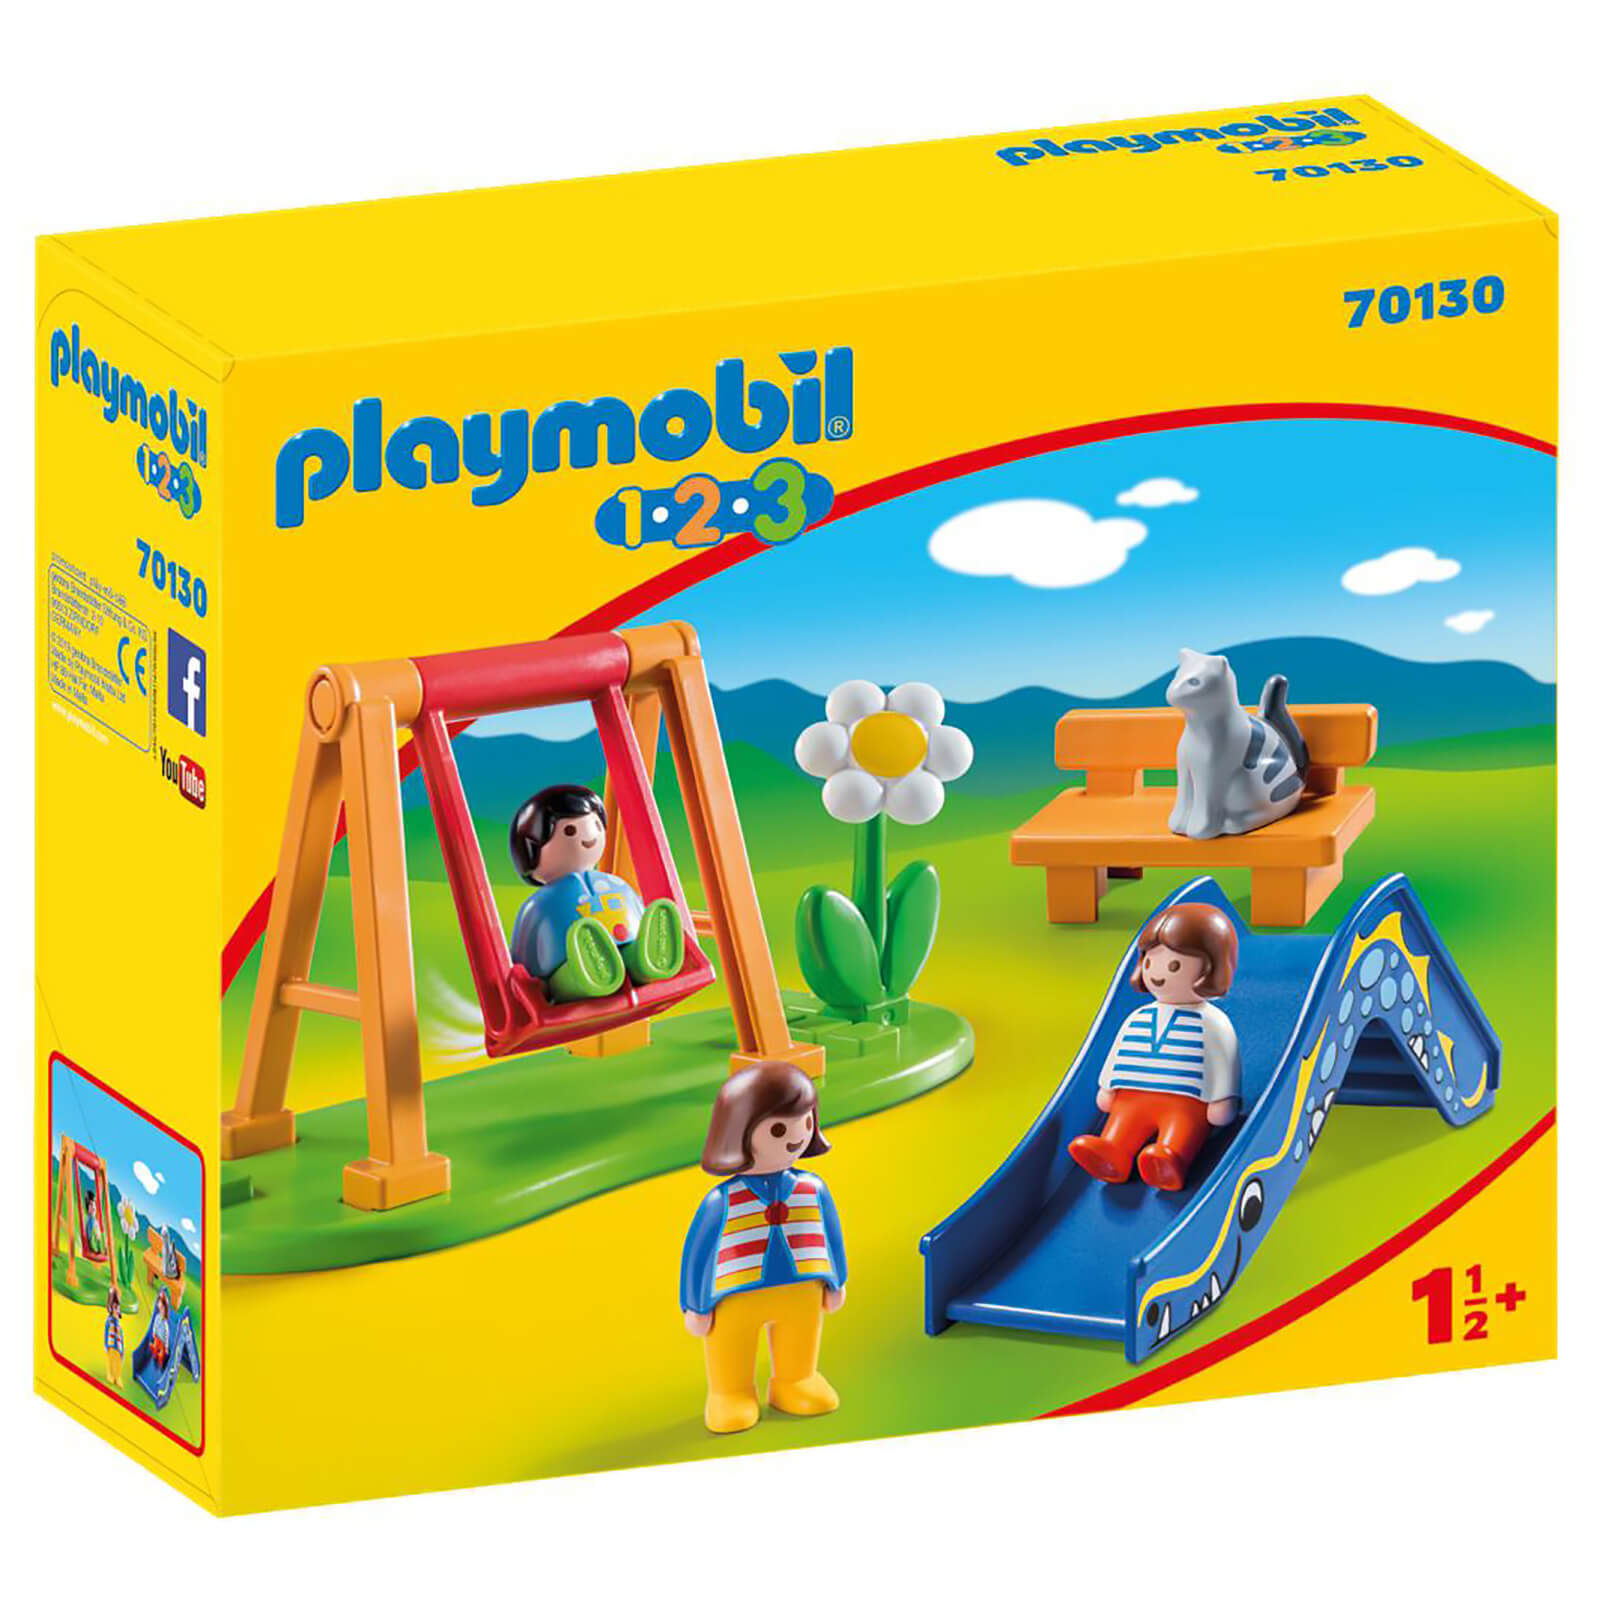 Playmobil 1.2.3 Children's Playground for Children 18 Months+ (70130)